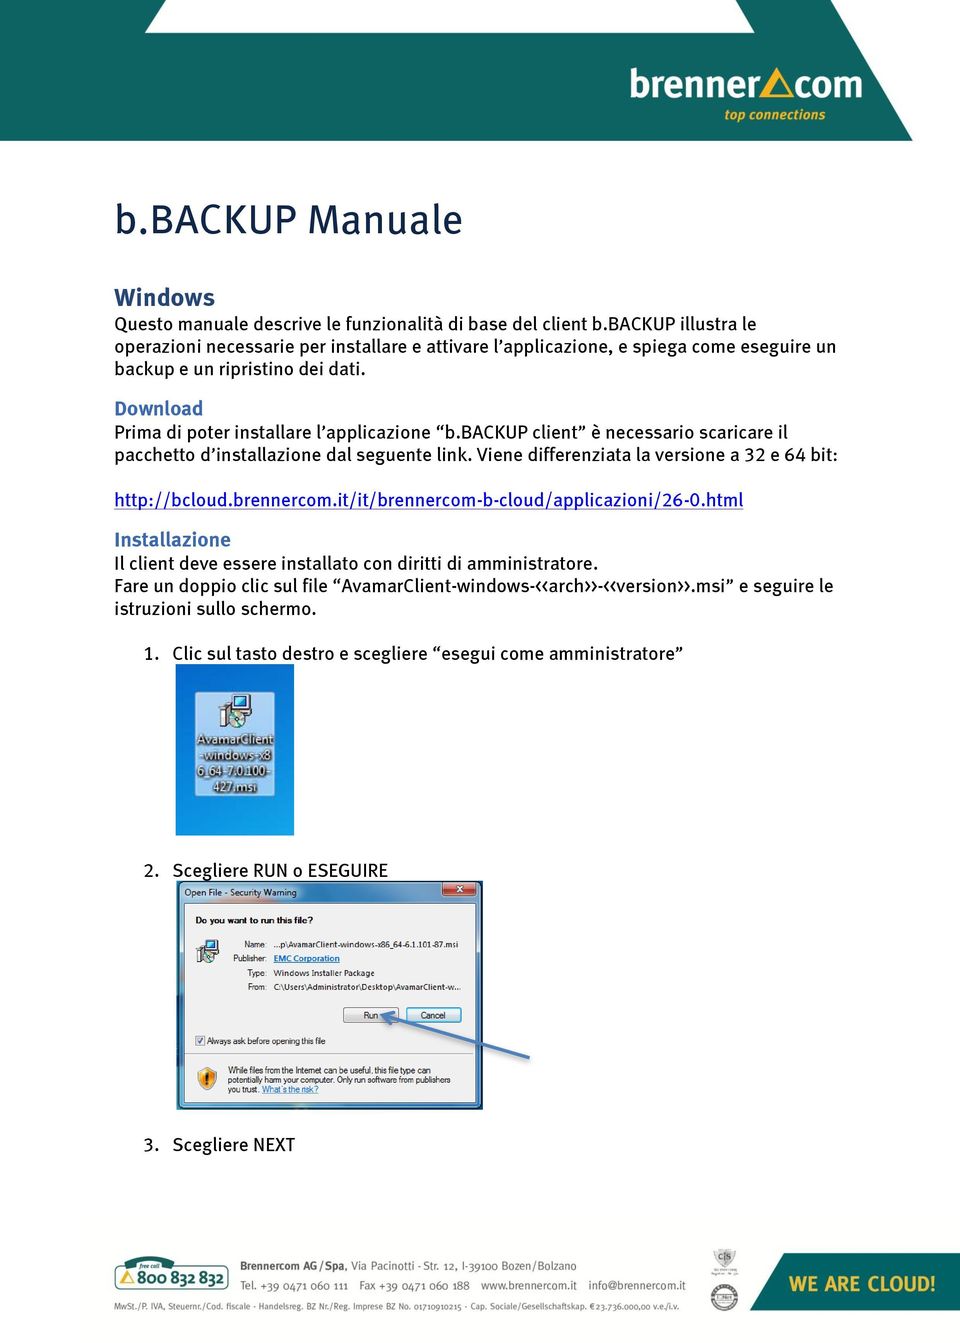 backup client è necessario scaricare il pacchetto d installazione dal seguente link. Viene differenziata la versione a 32 e 64 bit: http://bcloud.brennercom.